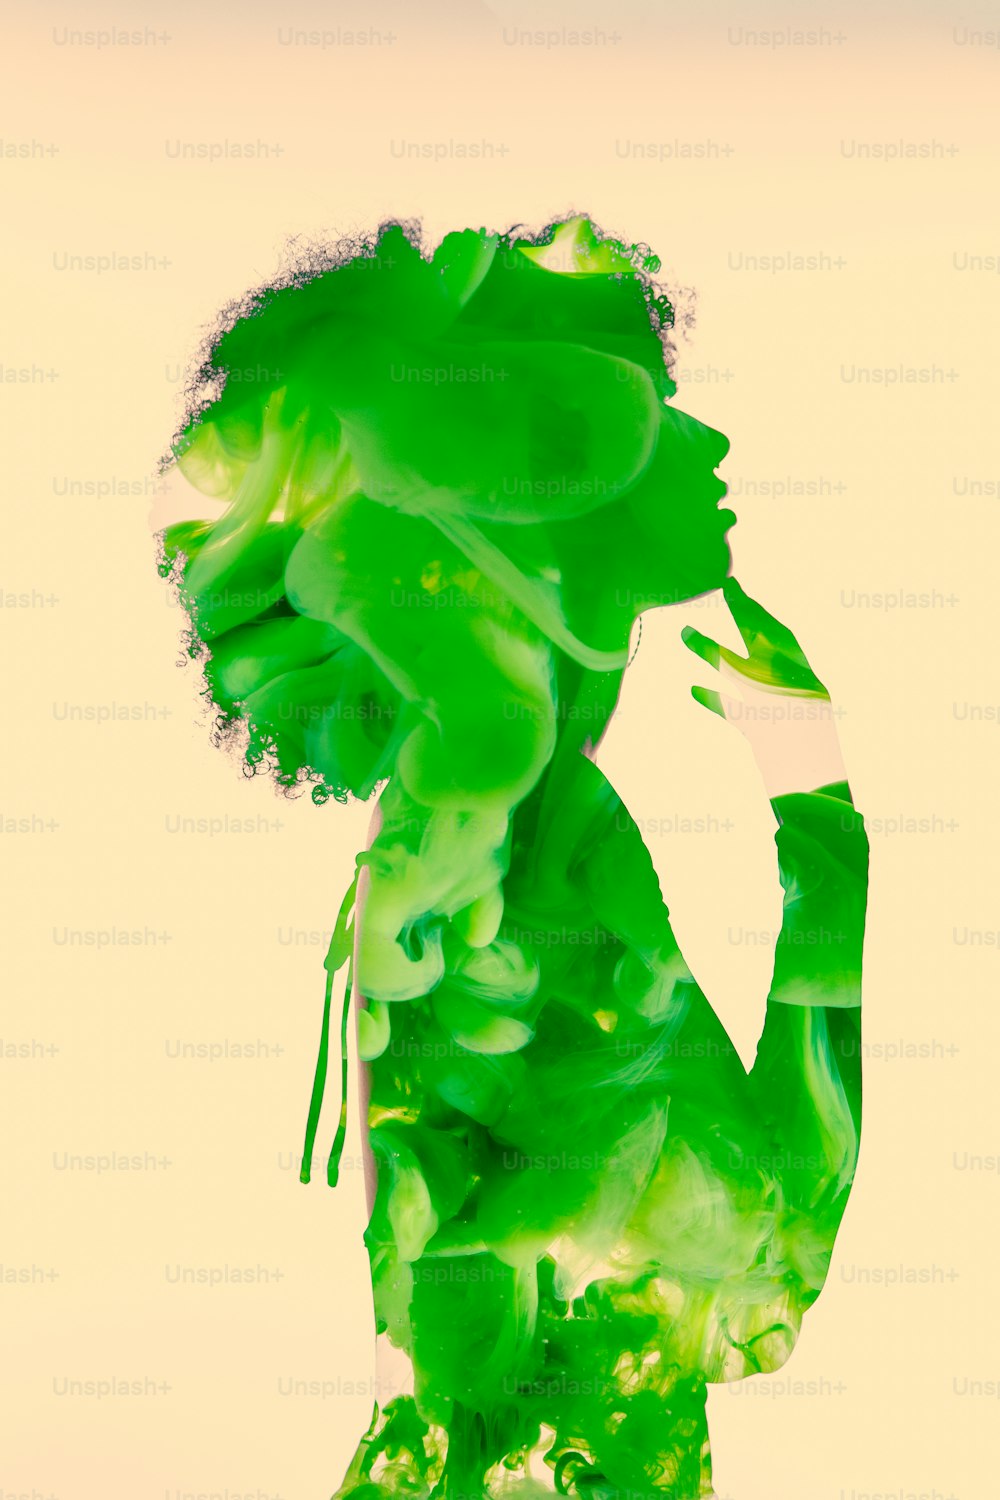 초록색 액체로 뒤덮인 여성의 몸